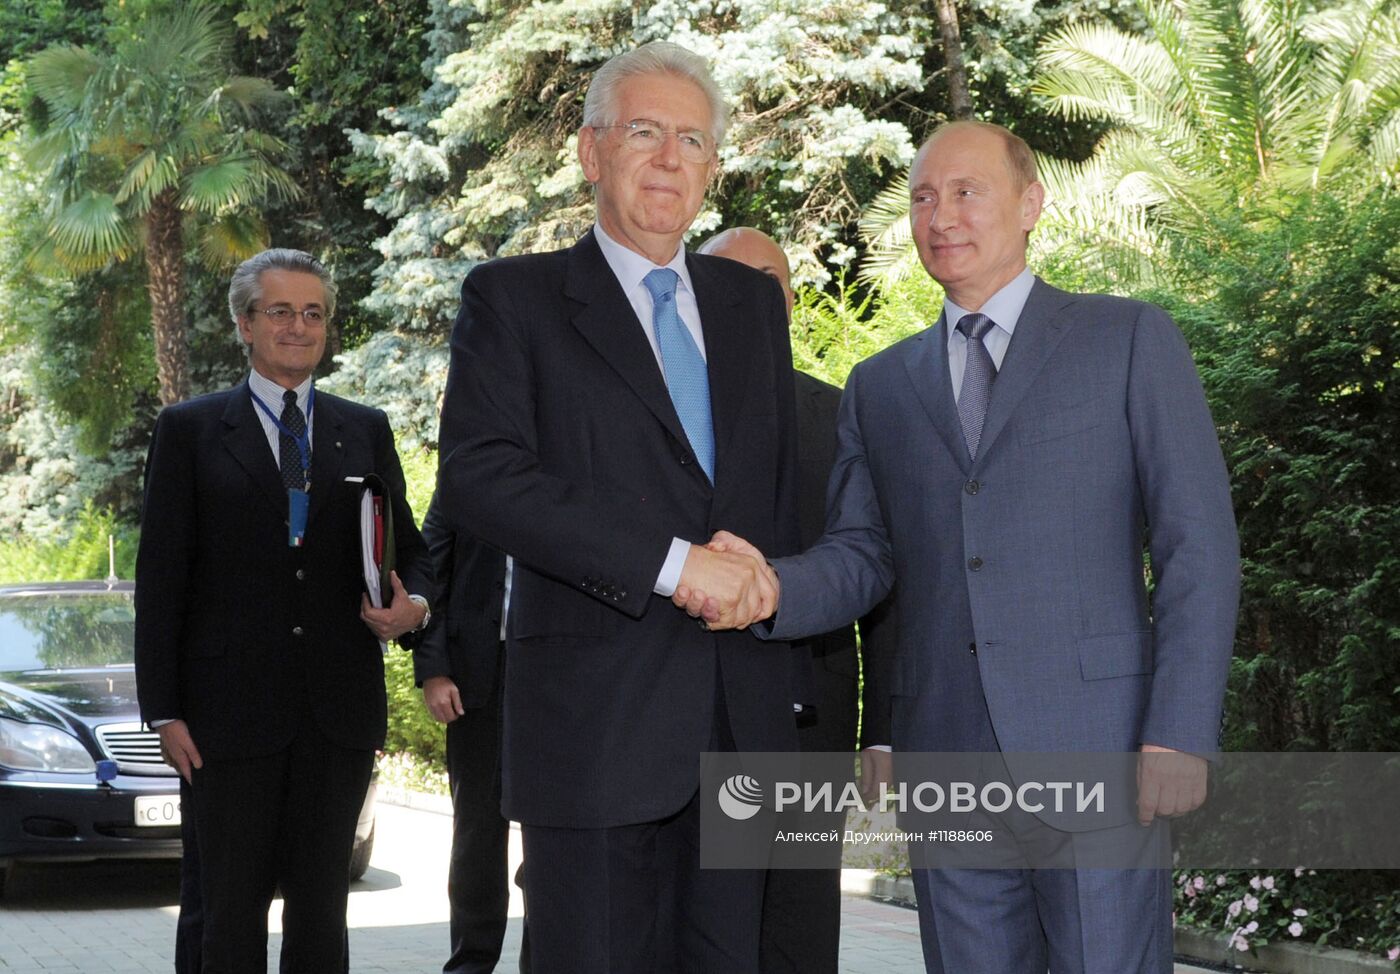 Встреча В.Путина и М.Монти в Сочи